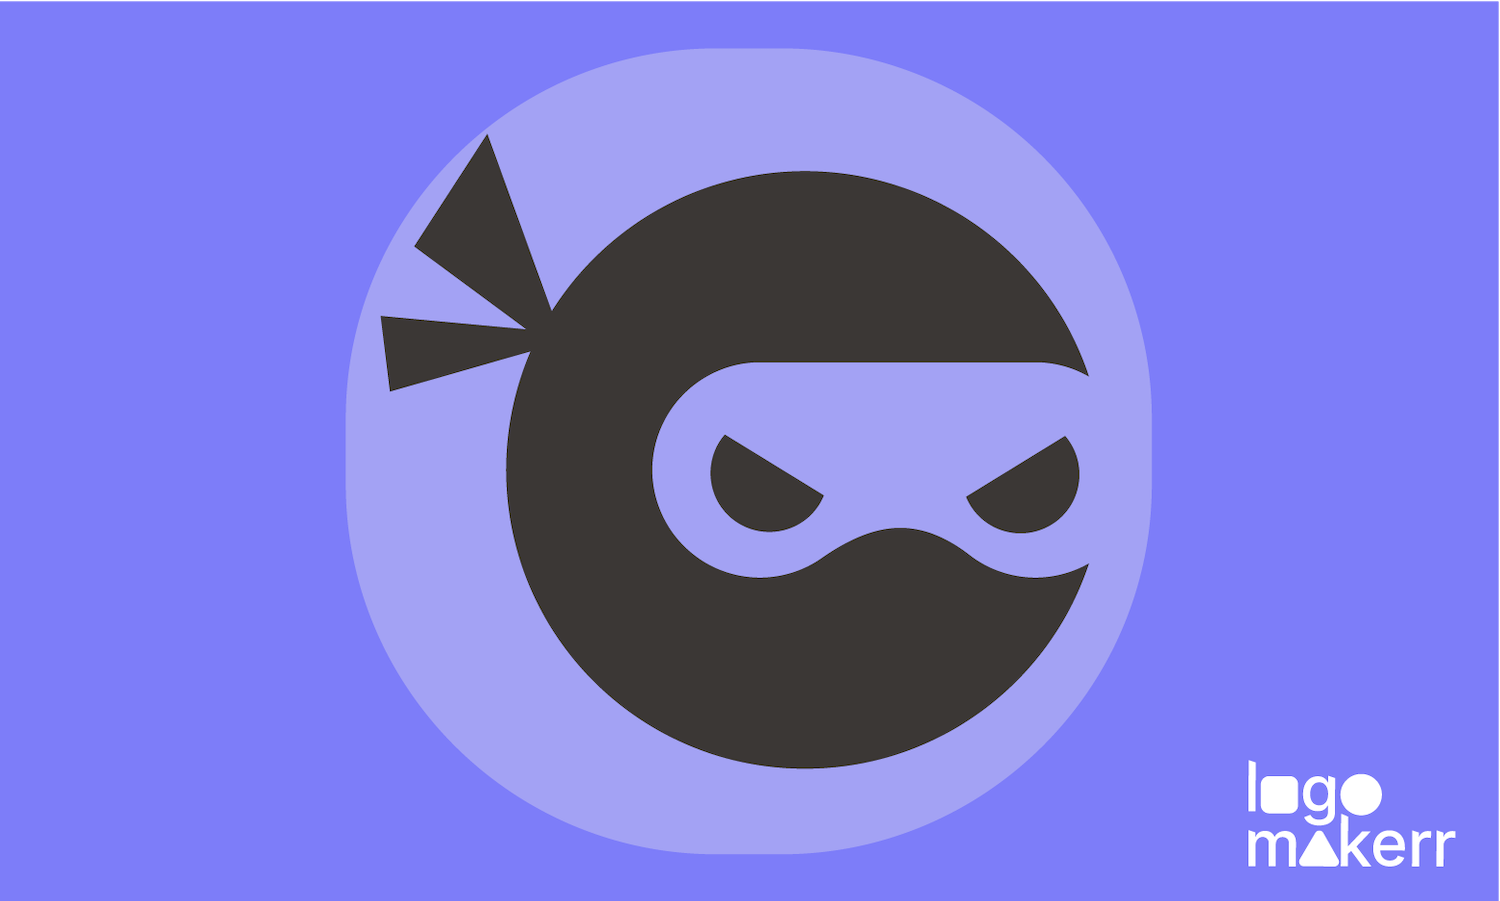 ninja logo with a black ninja cute symbol on purple background